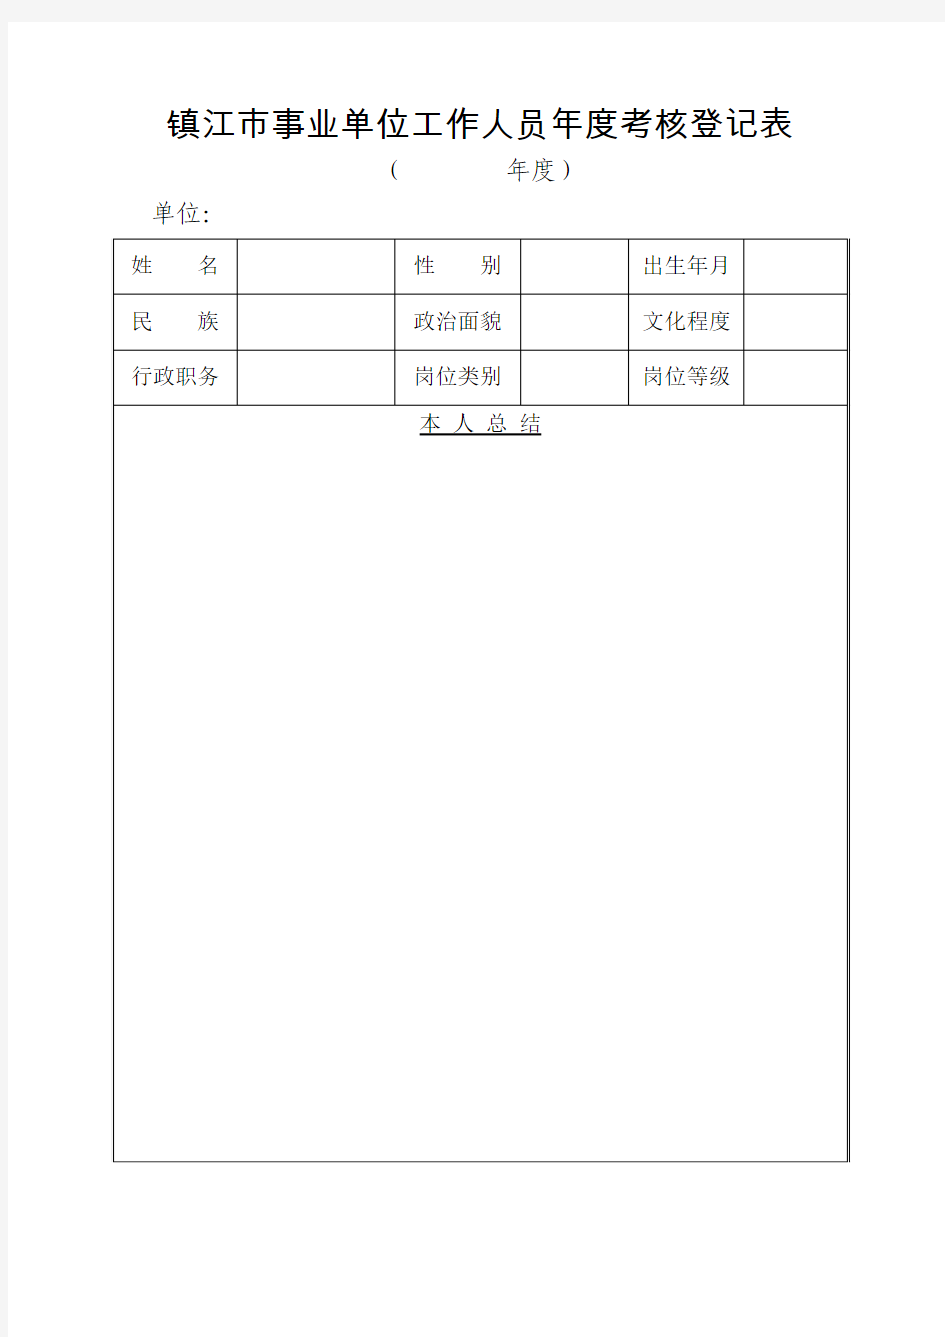 镇江市事业单位工作人员年度考核登记表